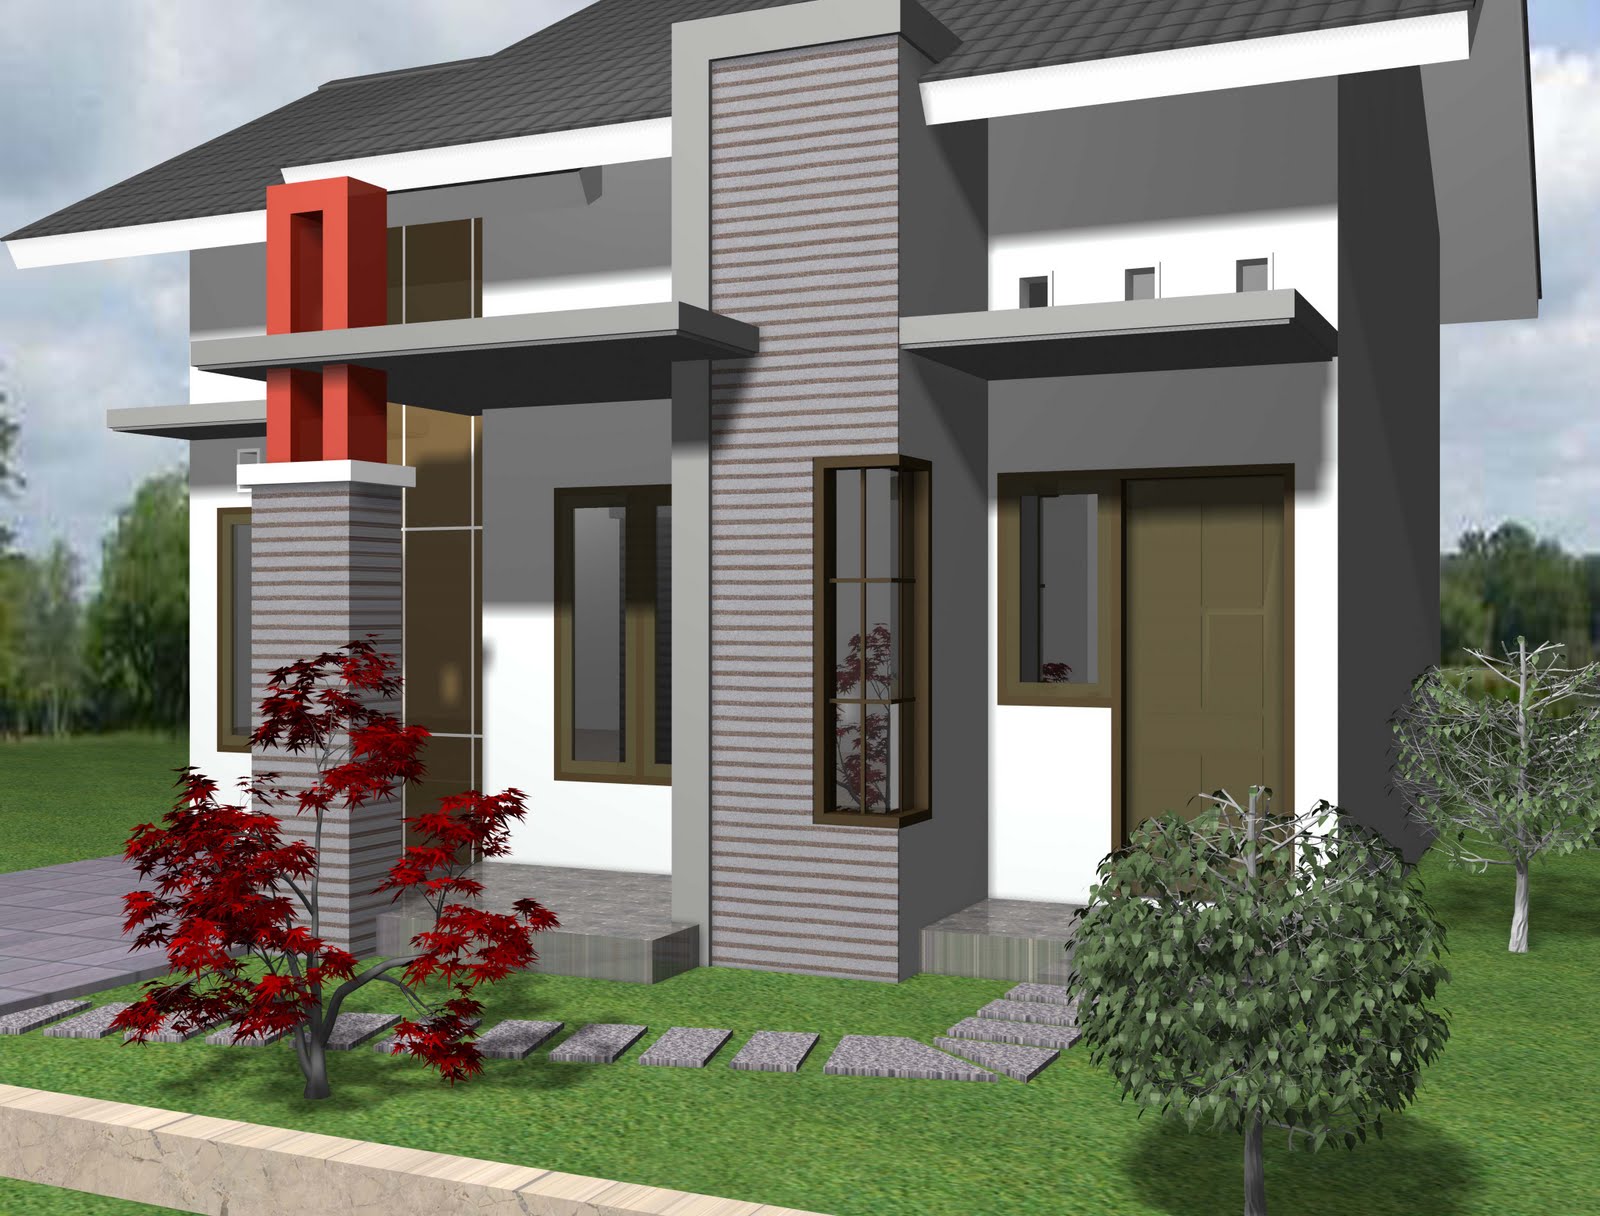 Desain Rumah Minimalis Type 21 Terbaru 2014 :: Aga Kewl